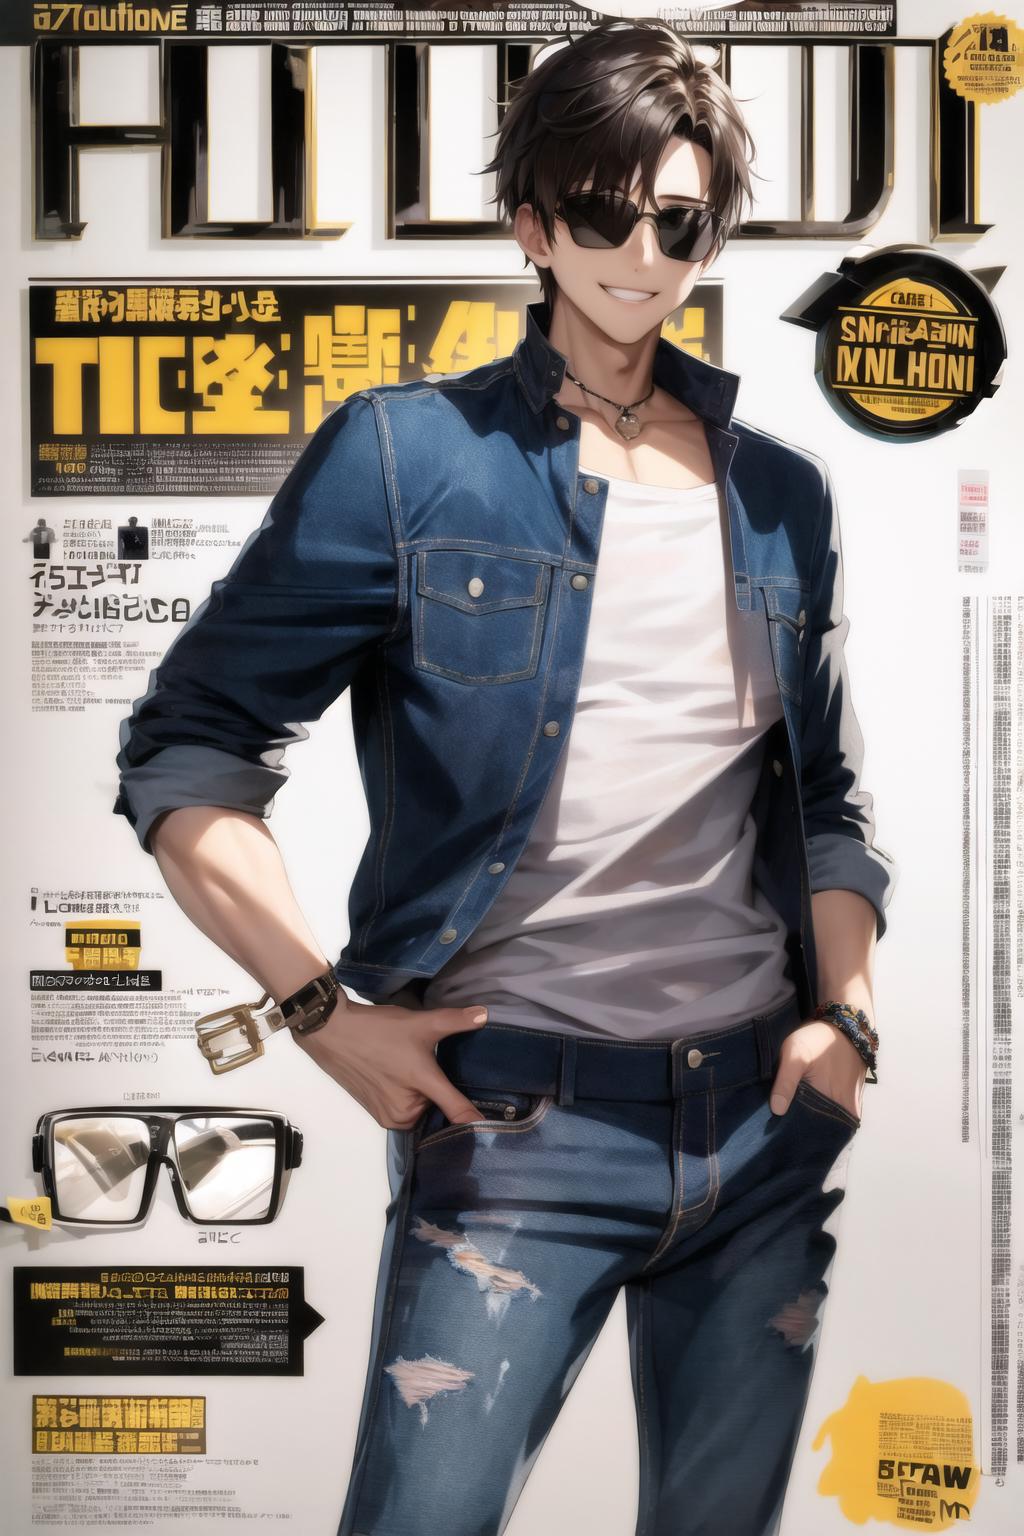 Manga/anime/lightnovelvn - Bìa Spur Magazine số Tháng 8/2023 với anh em nhà  Hoshino trên trang bìa ❤ Spur magazine là trang tạp chí người mẫu/thời  trang lớn nhất Nhật Bản. Thường thì